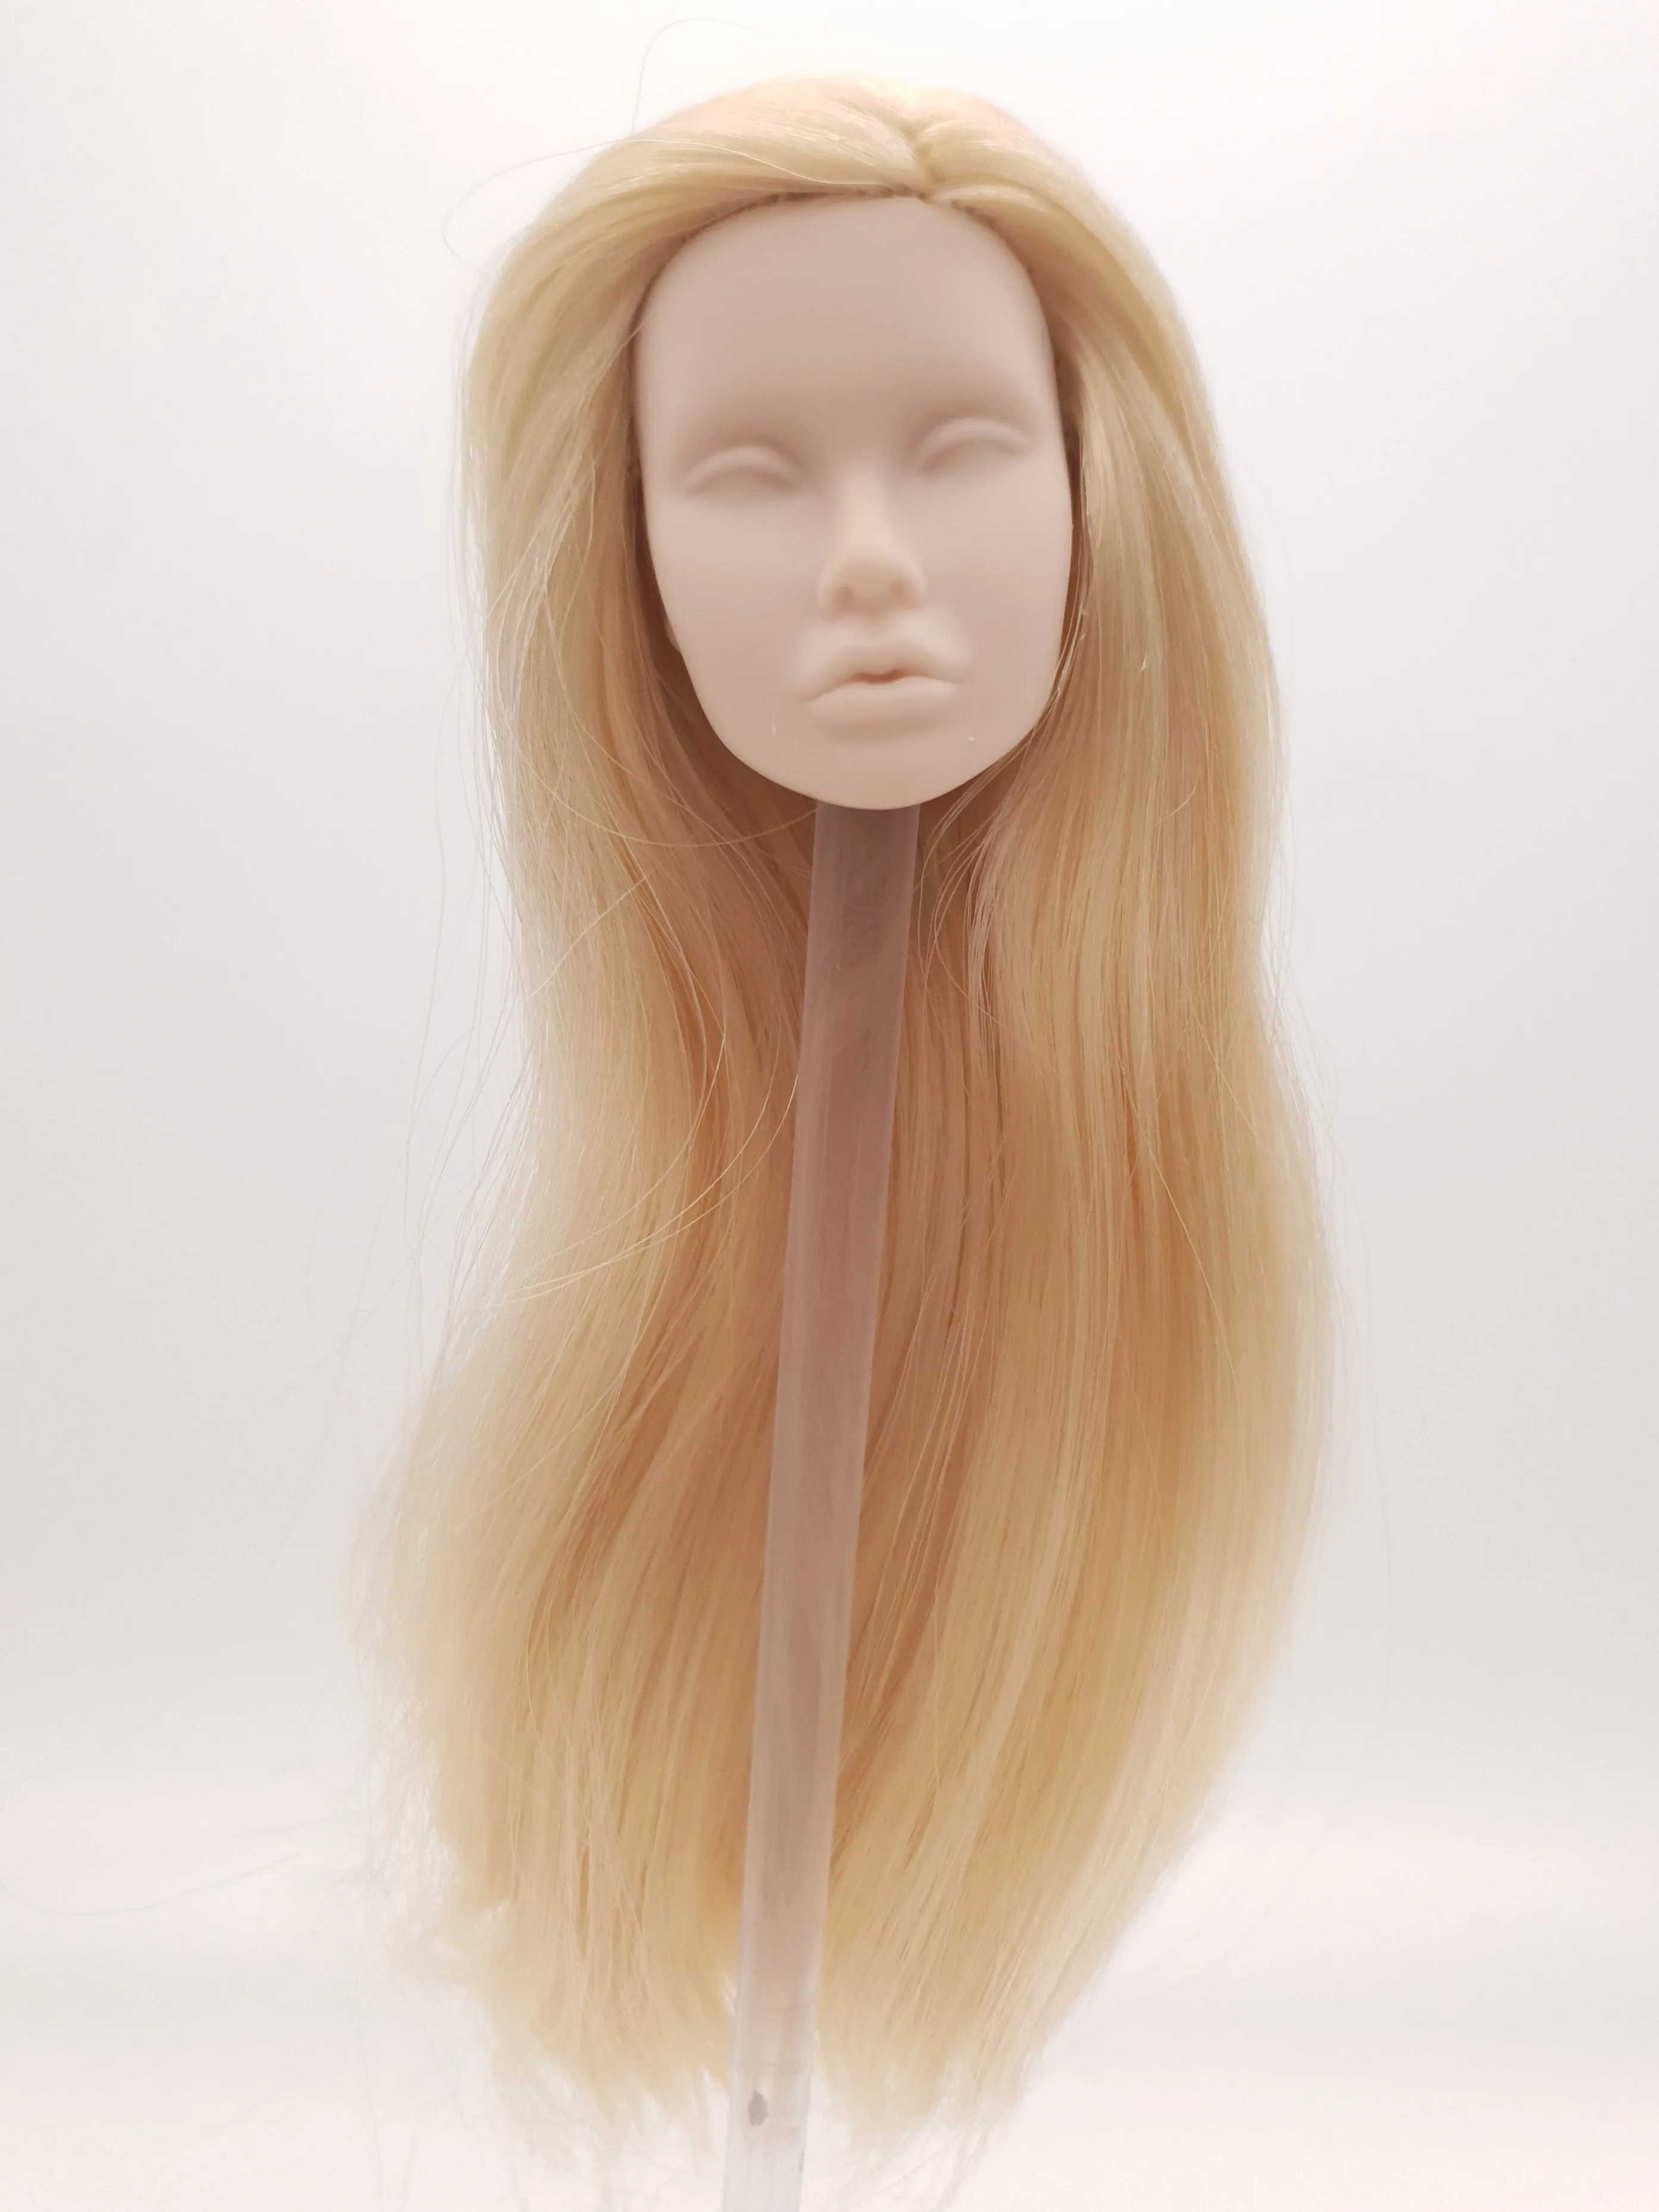 

Модный Королевский Мак Паркер светлые волосы Reroot пустое лицо масштаб 1/6 Кукольная голова